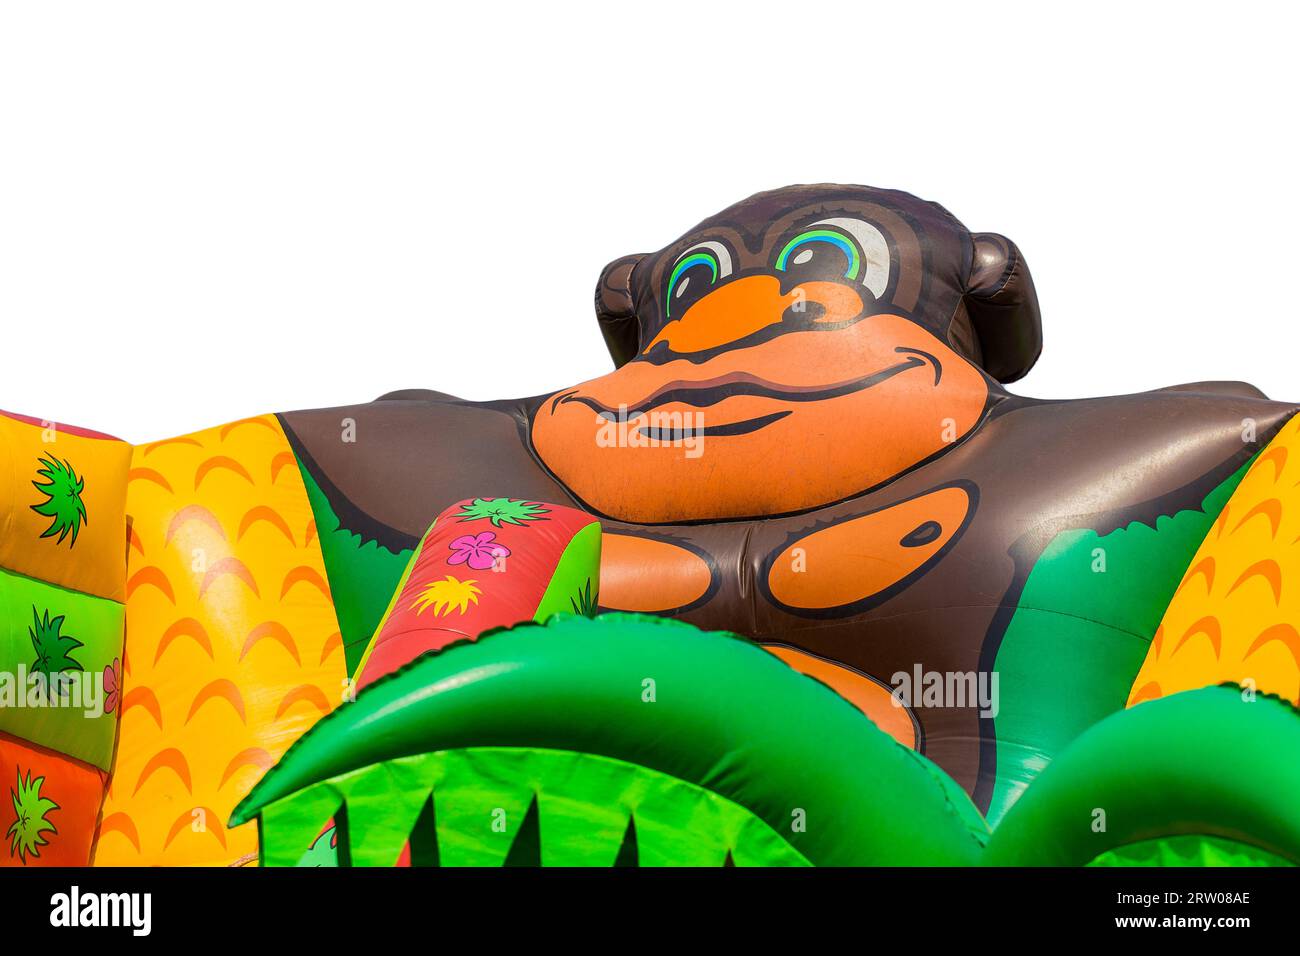 Teil einer aufblasbaren großen Rutsche ist ein Element für Kinder zu reiten in Form eines Cartoon, lustige Gorilla im Hintergrund weiß isoliert. Stockfoto